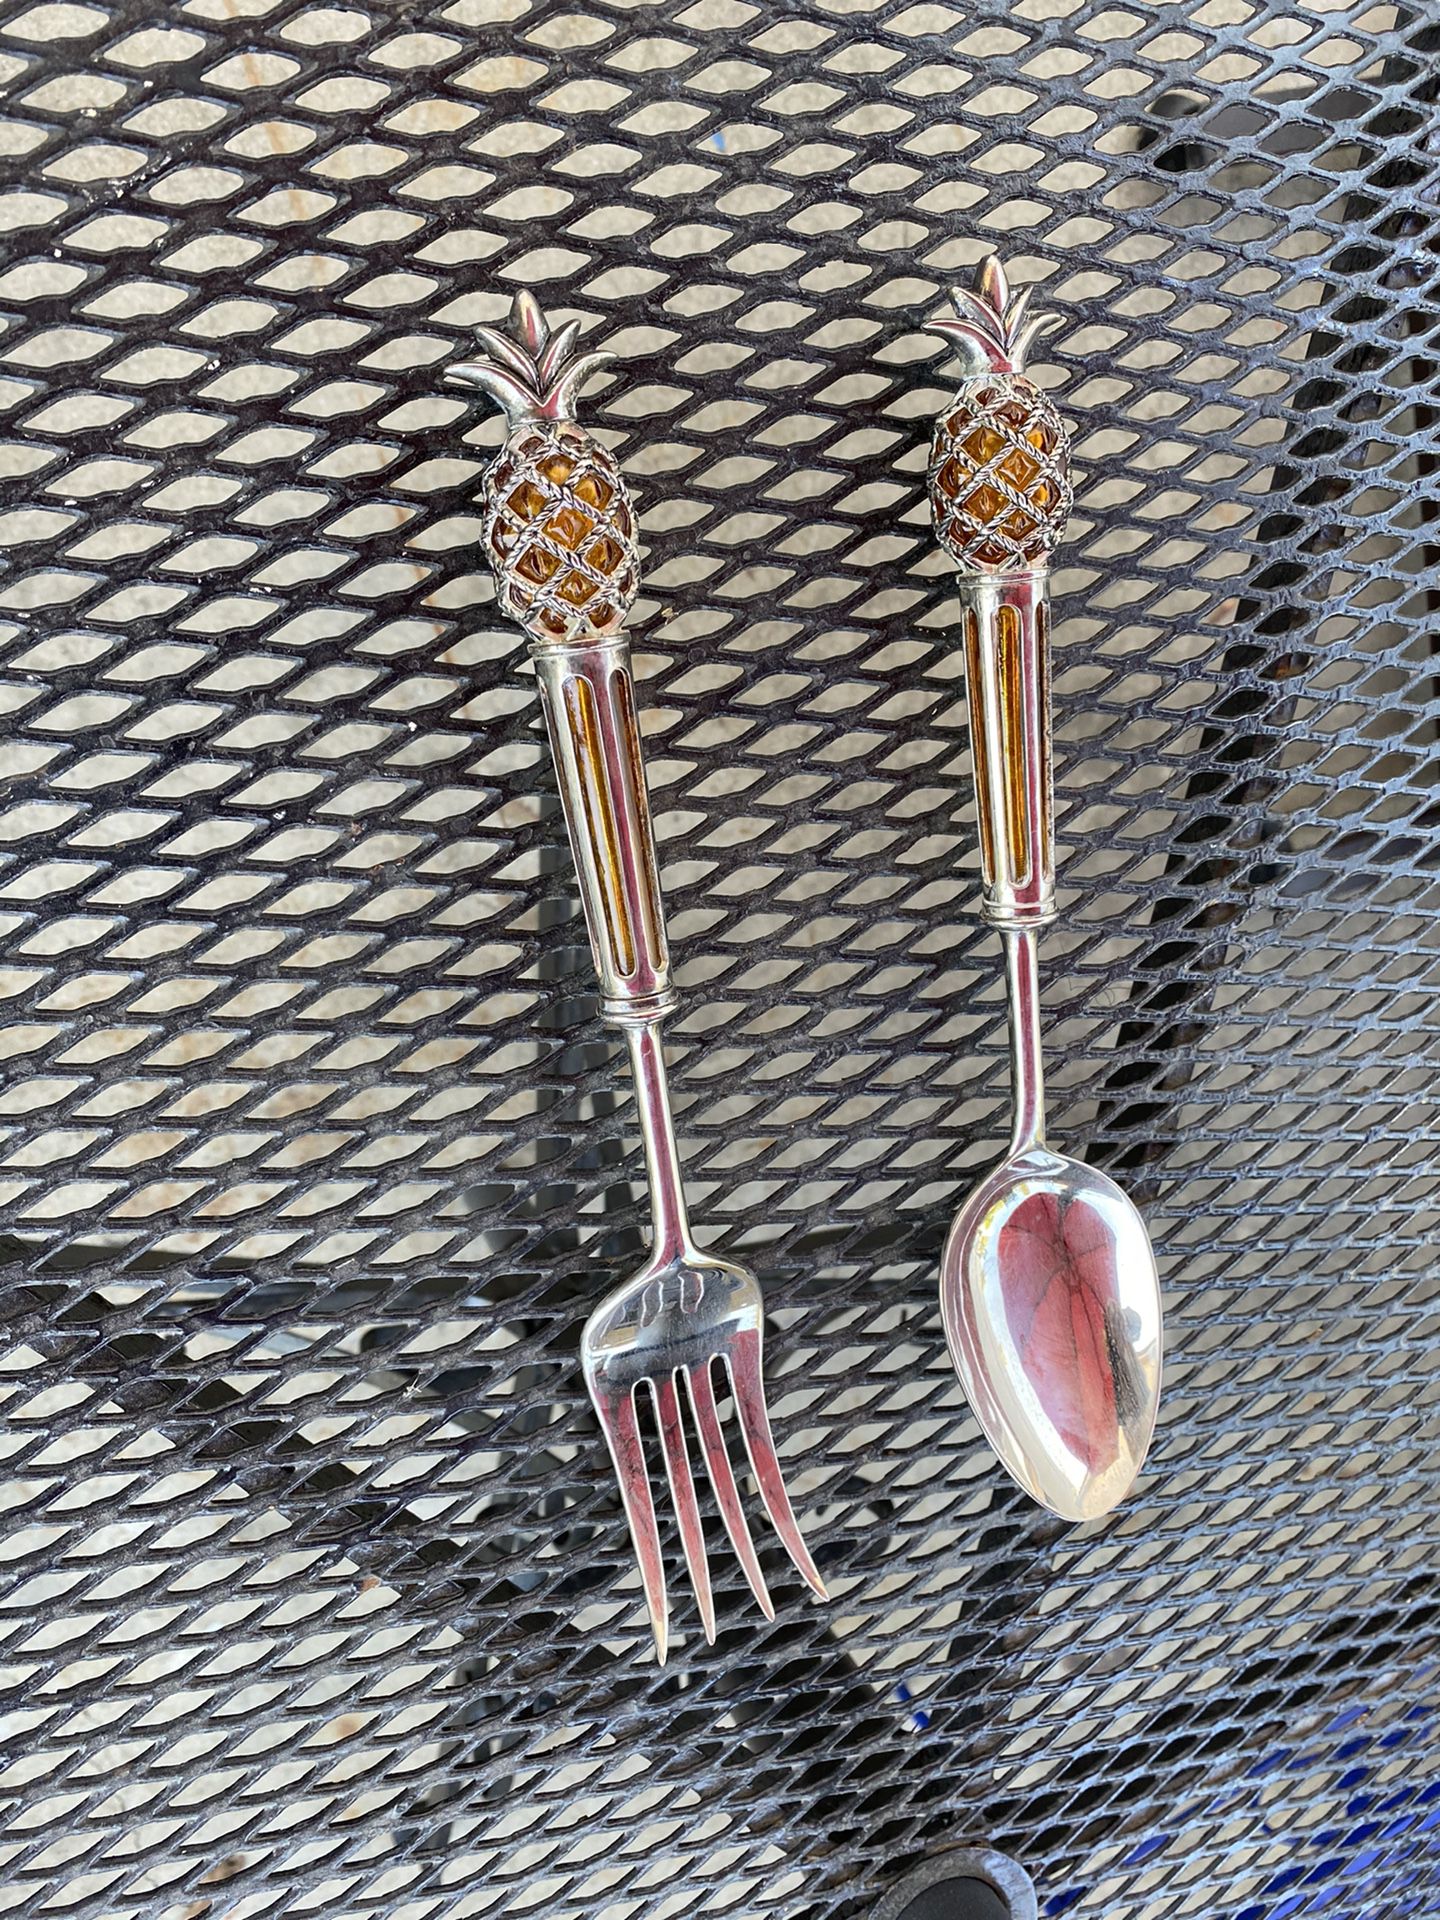 12 “ spoon and fork , nice no tarnish ! Nice 👍🏽